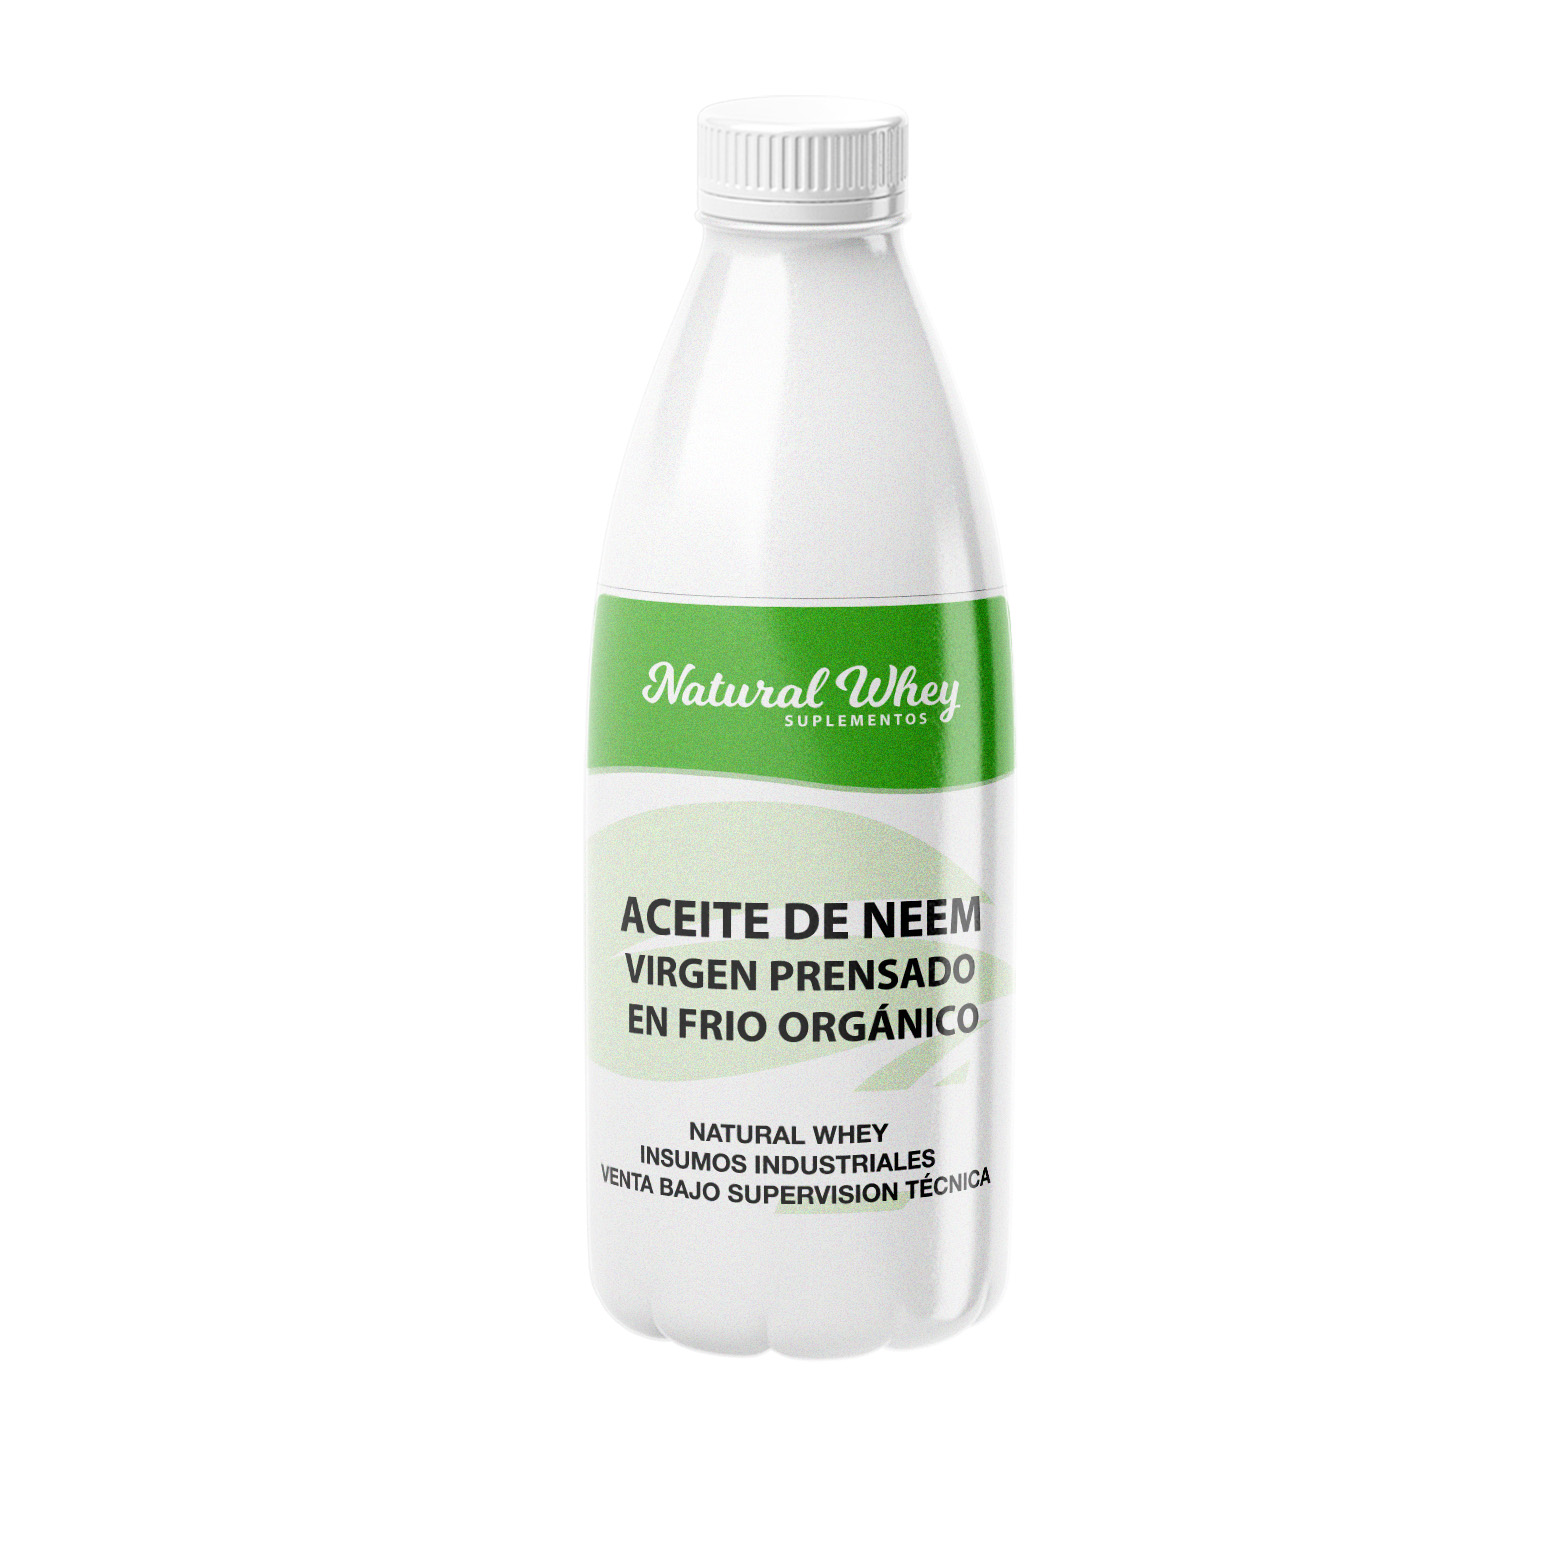 Aceite de neem orgánico prémium virgen, prensado en frío, sin refinar, 100%  puro grado natural A. Excelente calidad (4 onzas líquidas)